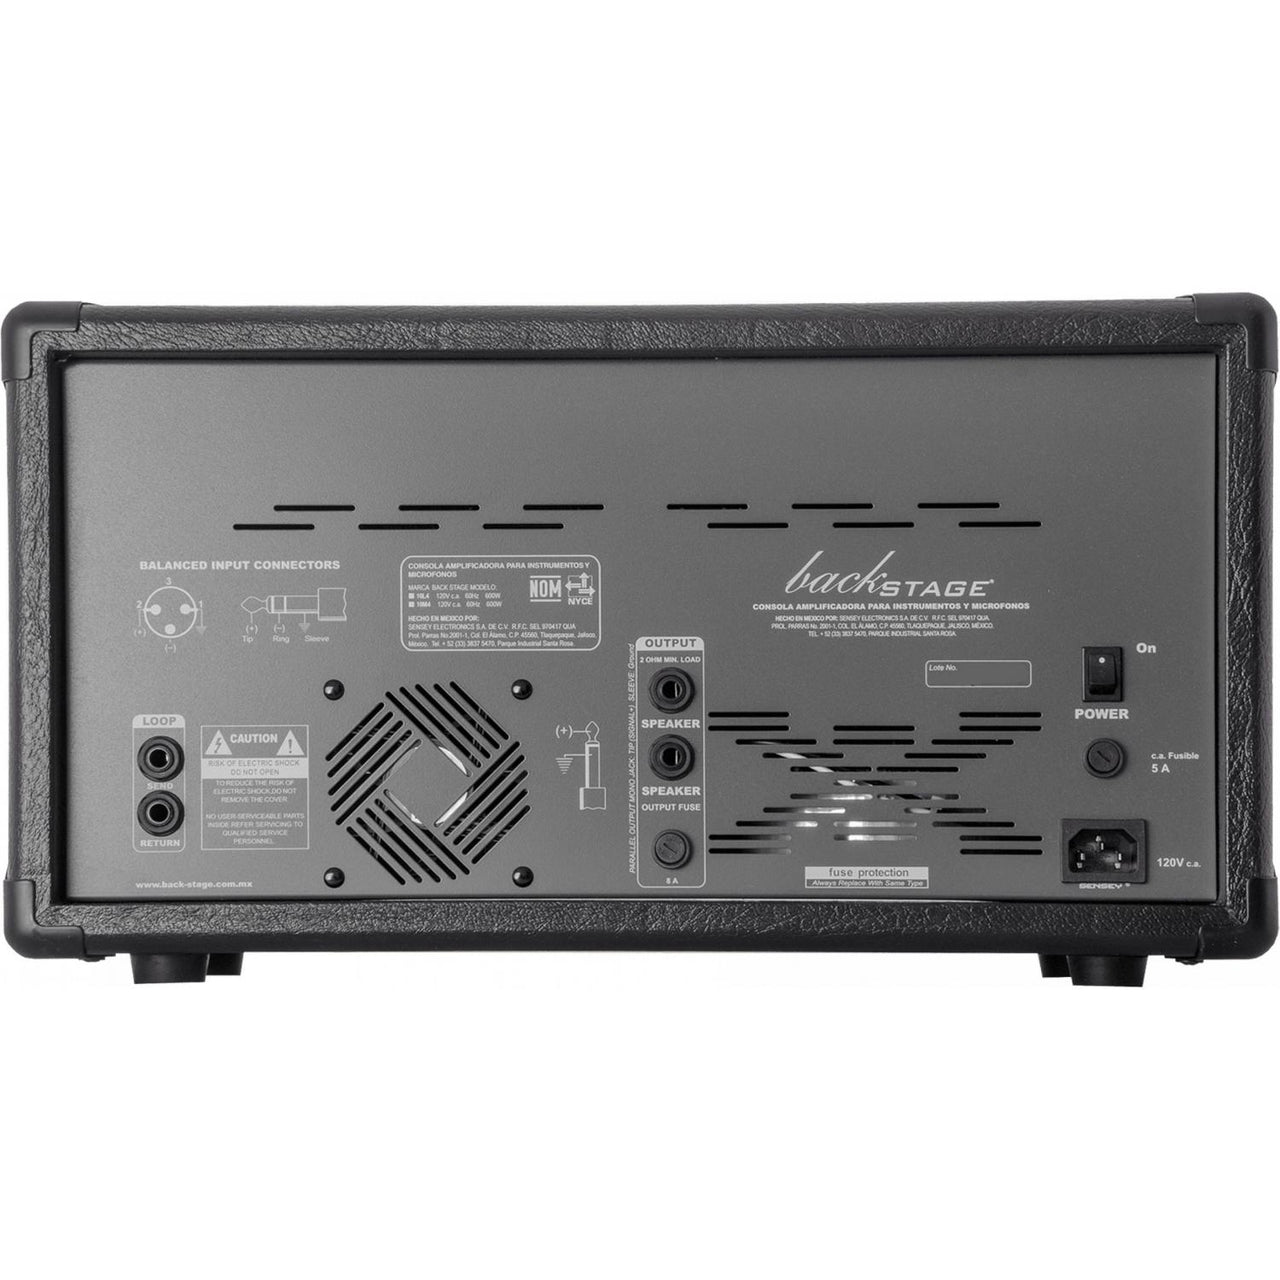 Consola Amplifica Back Stage Mezcladora 10 Canales Para lineas Y Microfono 10l4 Usb